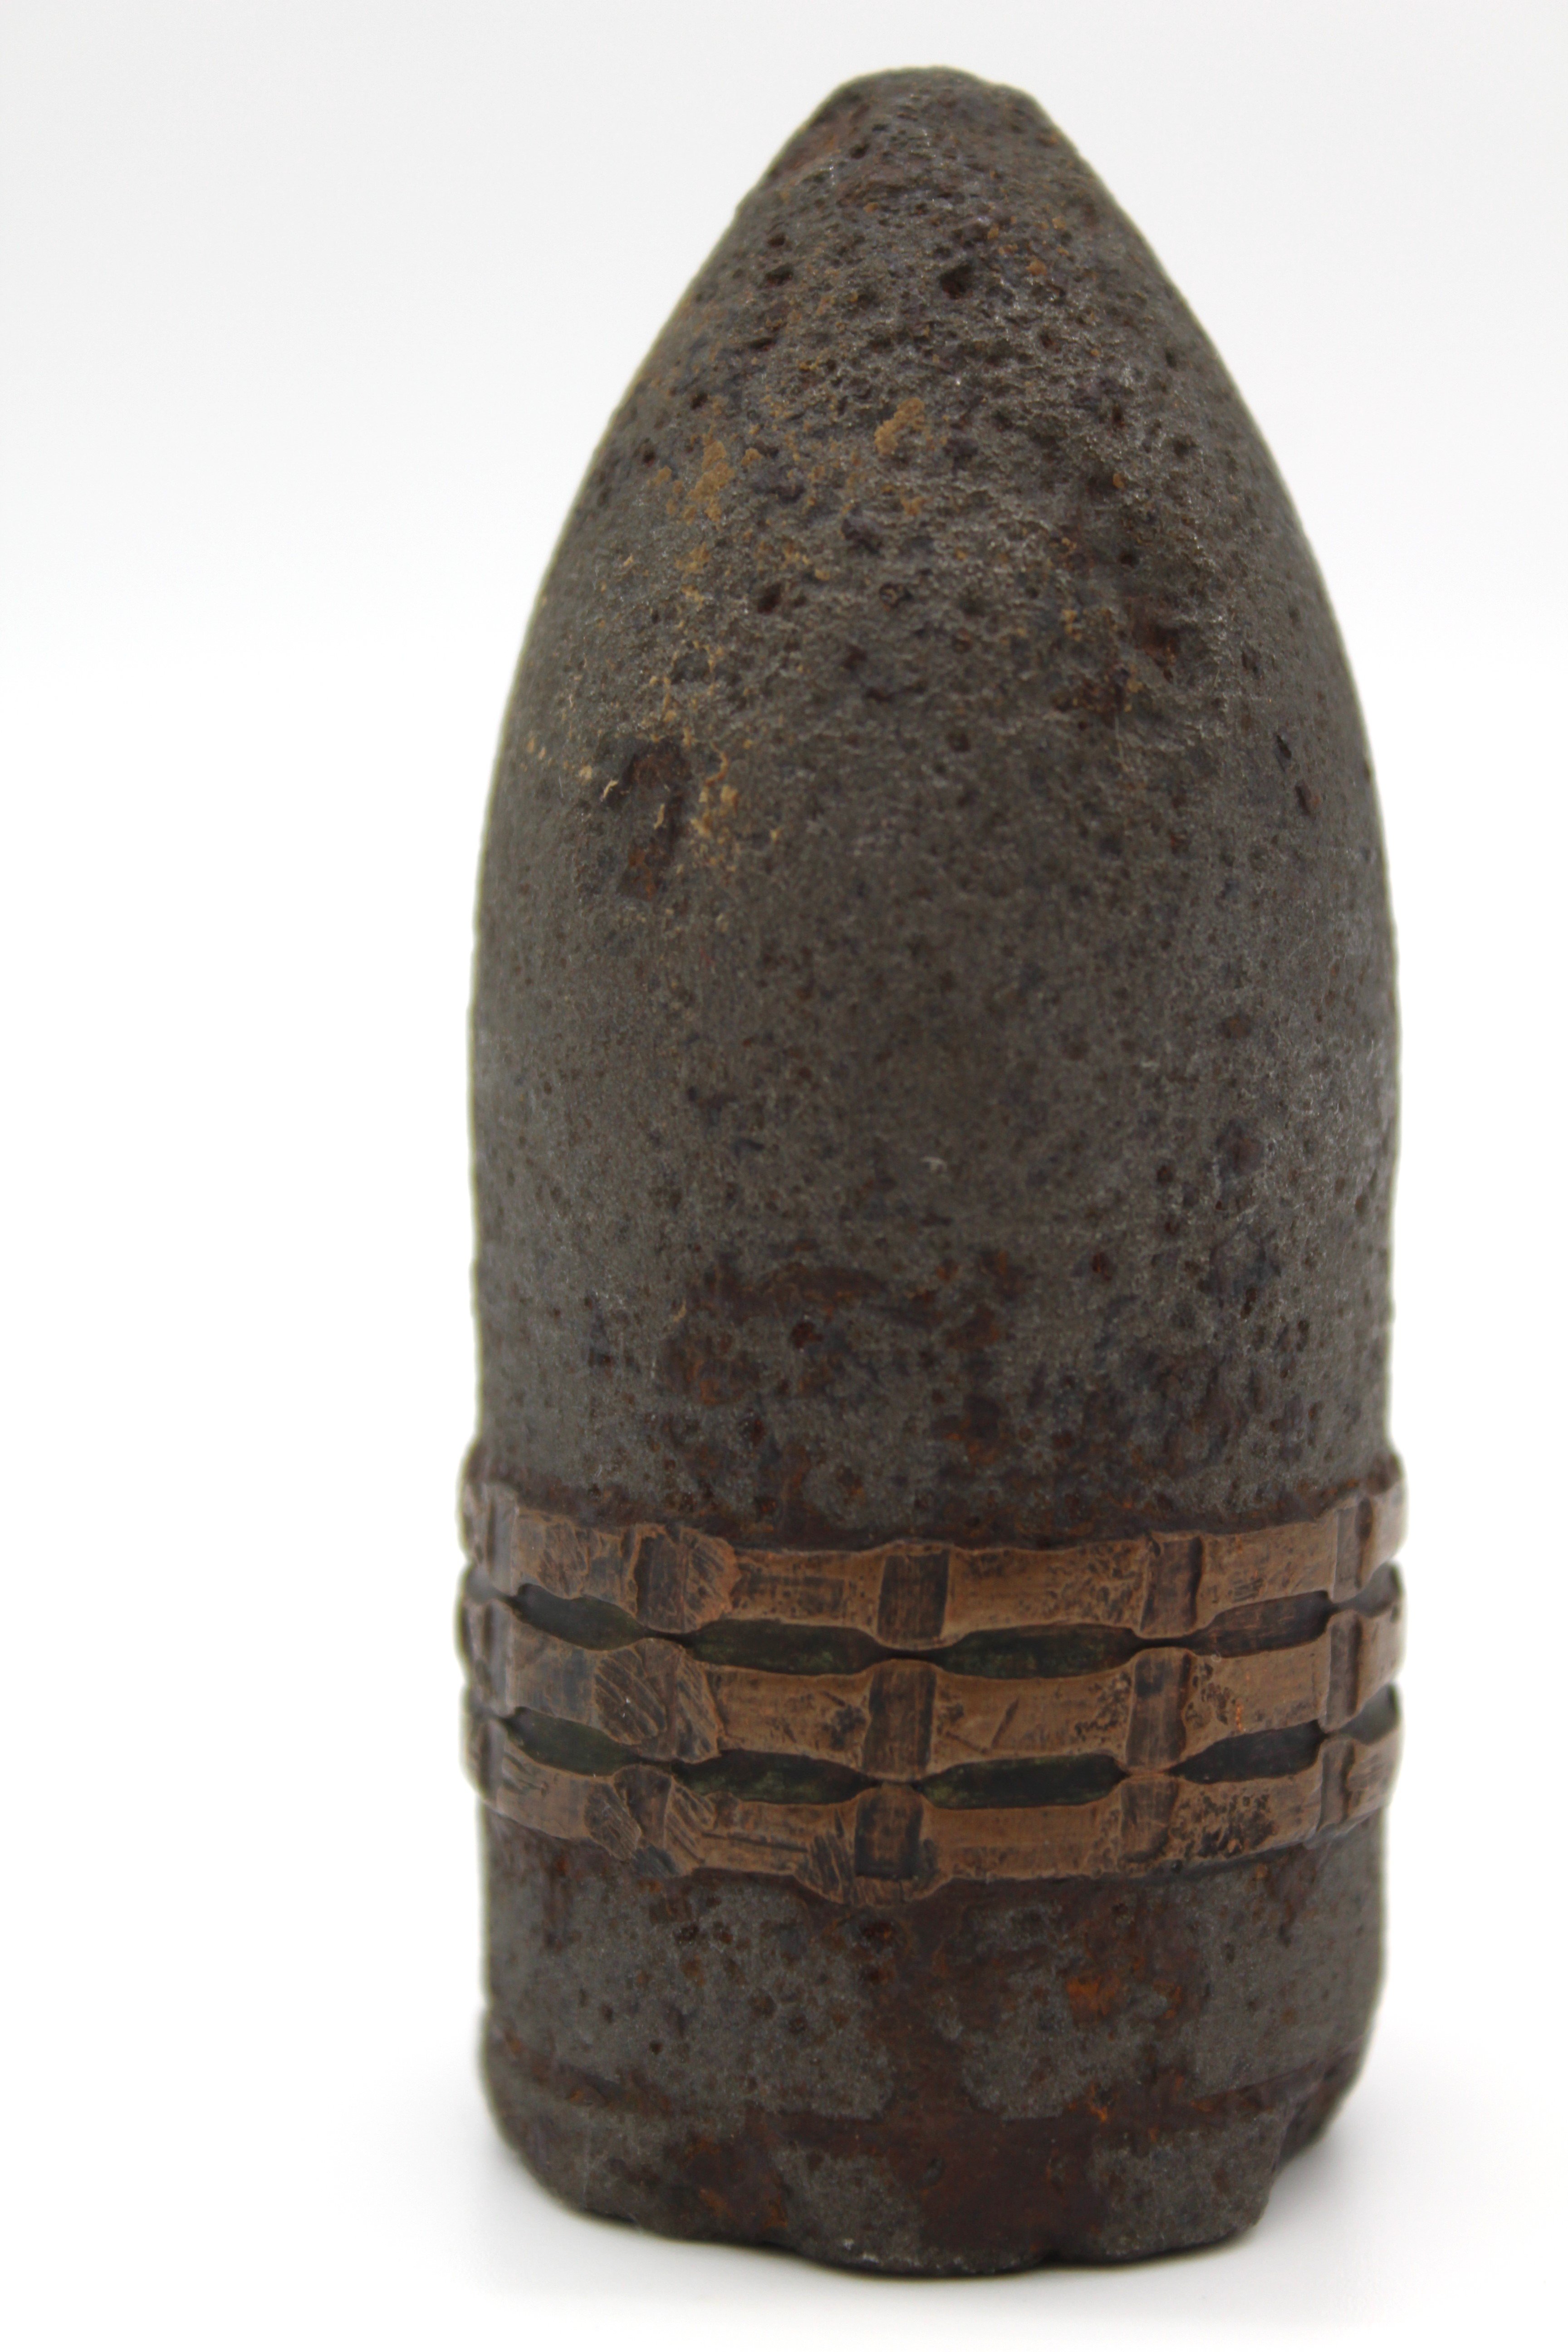 Ядро від гармати Гочкіна, кін. ХІХ - поч. XX ст. (Національний заповідник "Хортиця" CC BY-NC-SA)